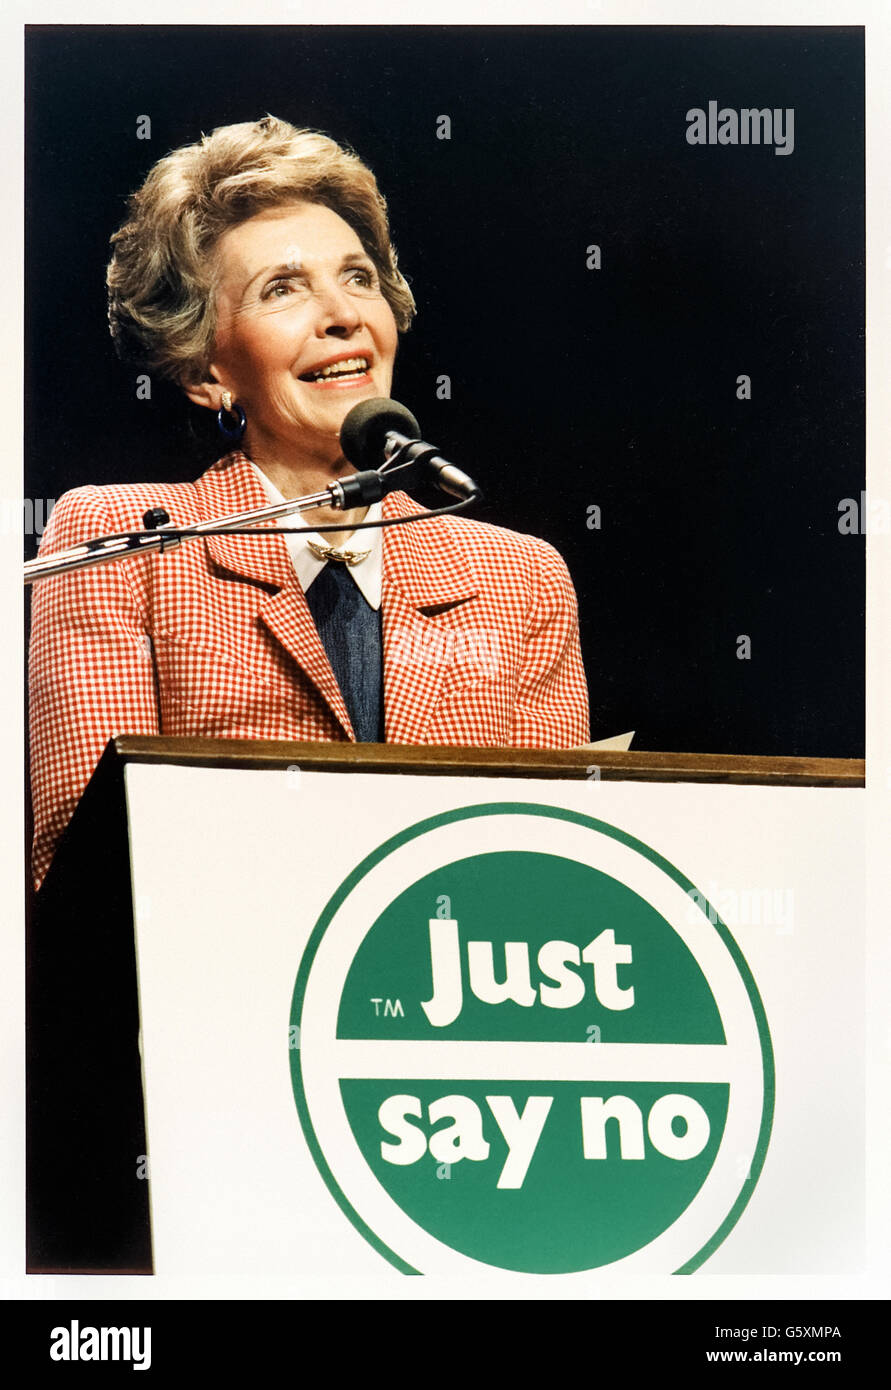 "Il suffit de dire non" campagne anti-drogue, le slogan a été créé et parrainé par la Première Dame Nancy Reagan illustré ici de donner un discours à l'occasion d'une manifestation à Los Angeles, Californie le 13 mai 1987 lors d'une 'national' à dire non 7. Voir la description pour plus d'informations. Banque D'Images